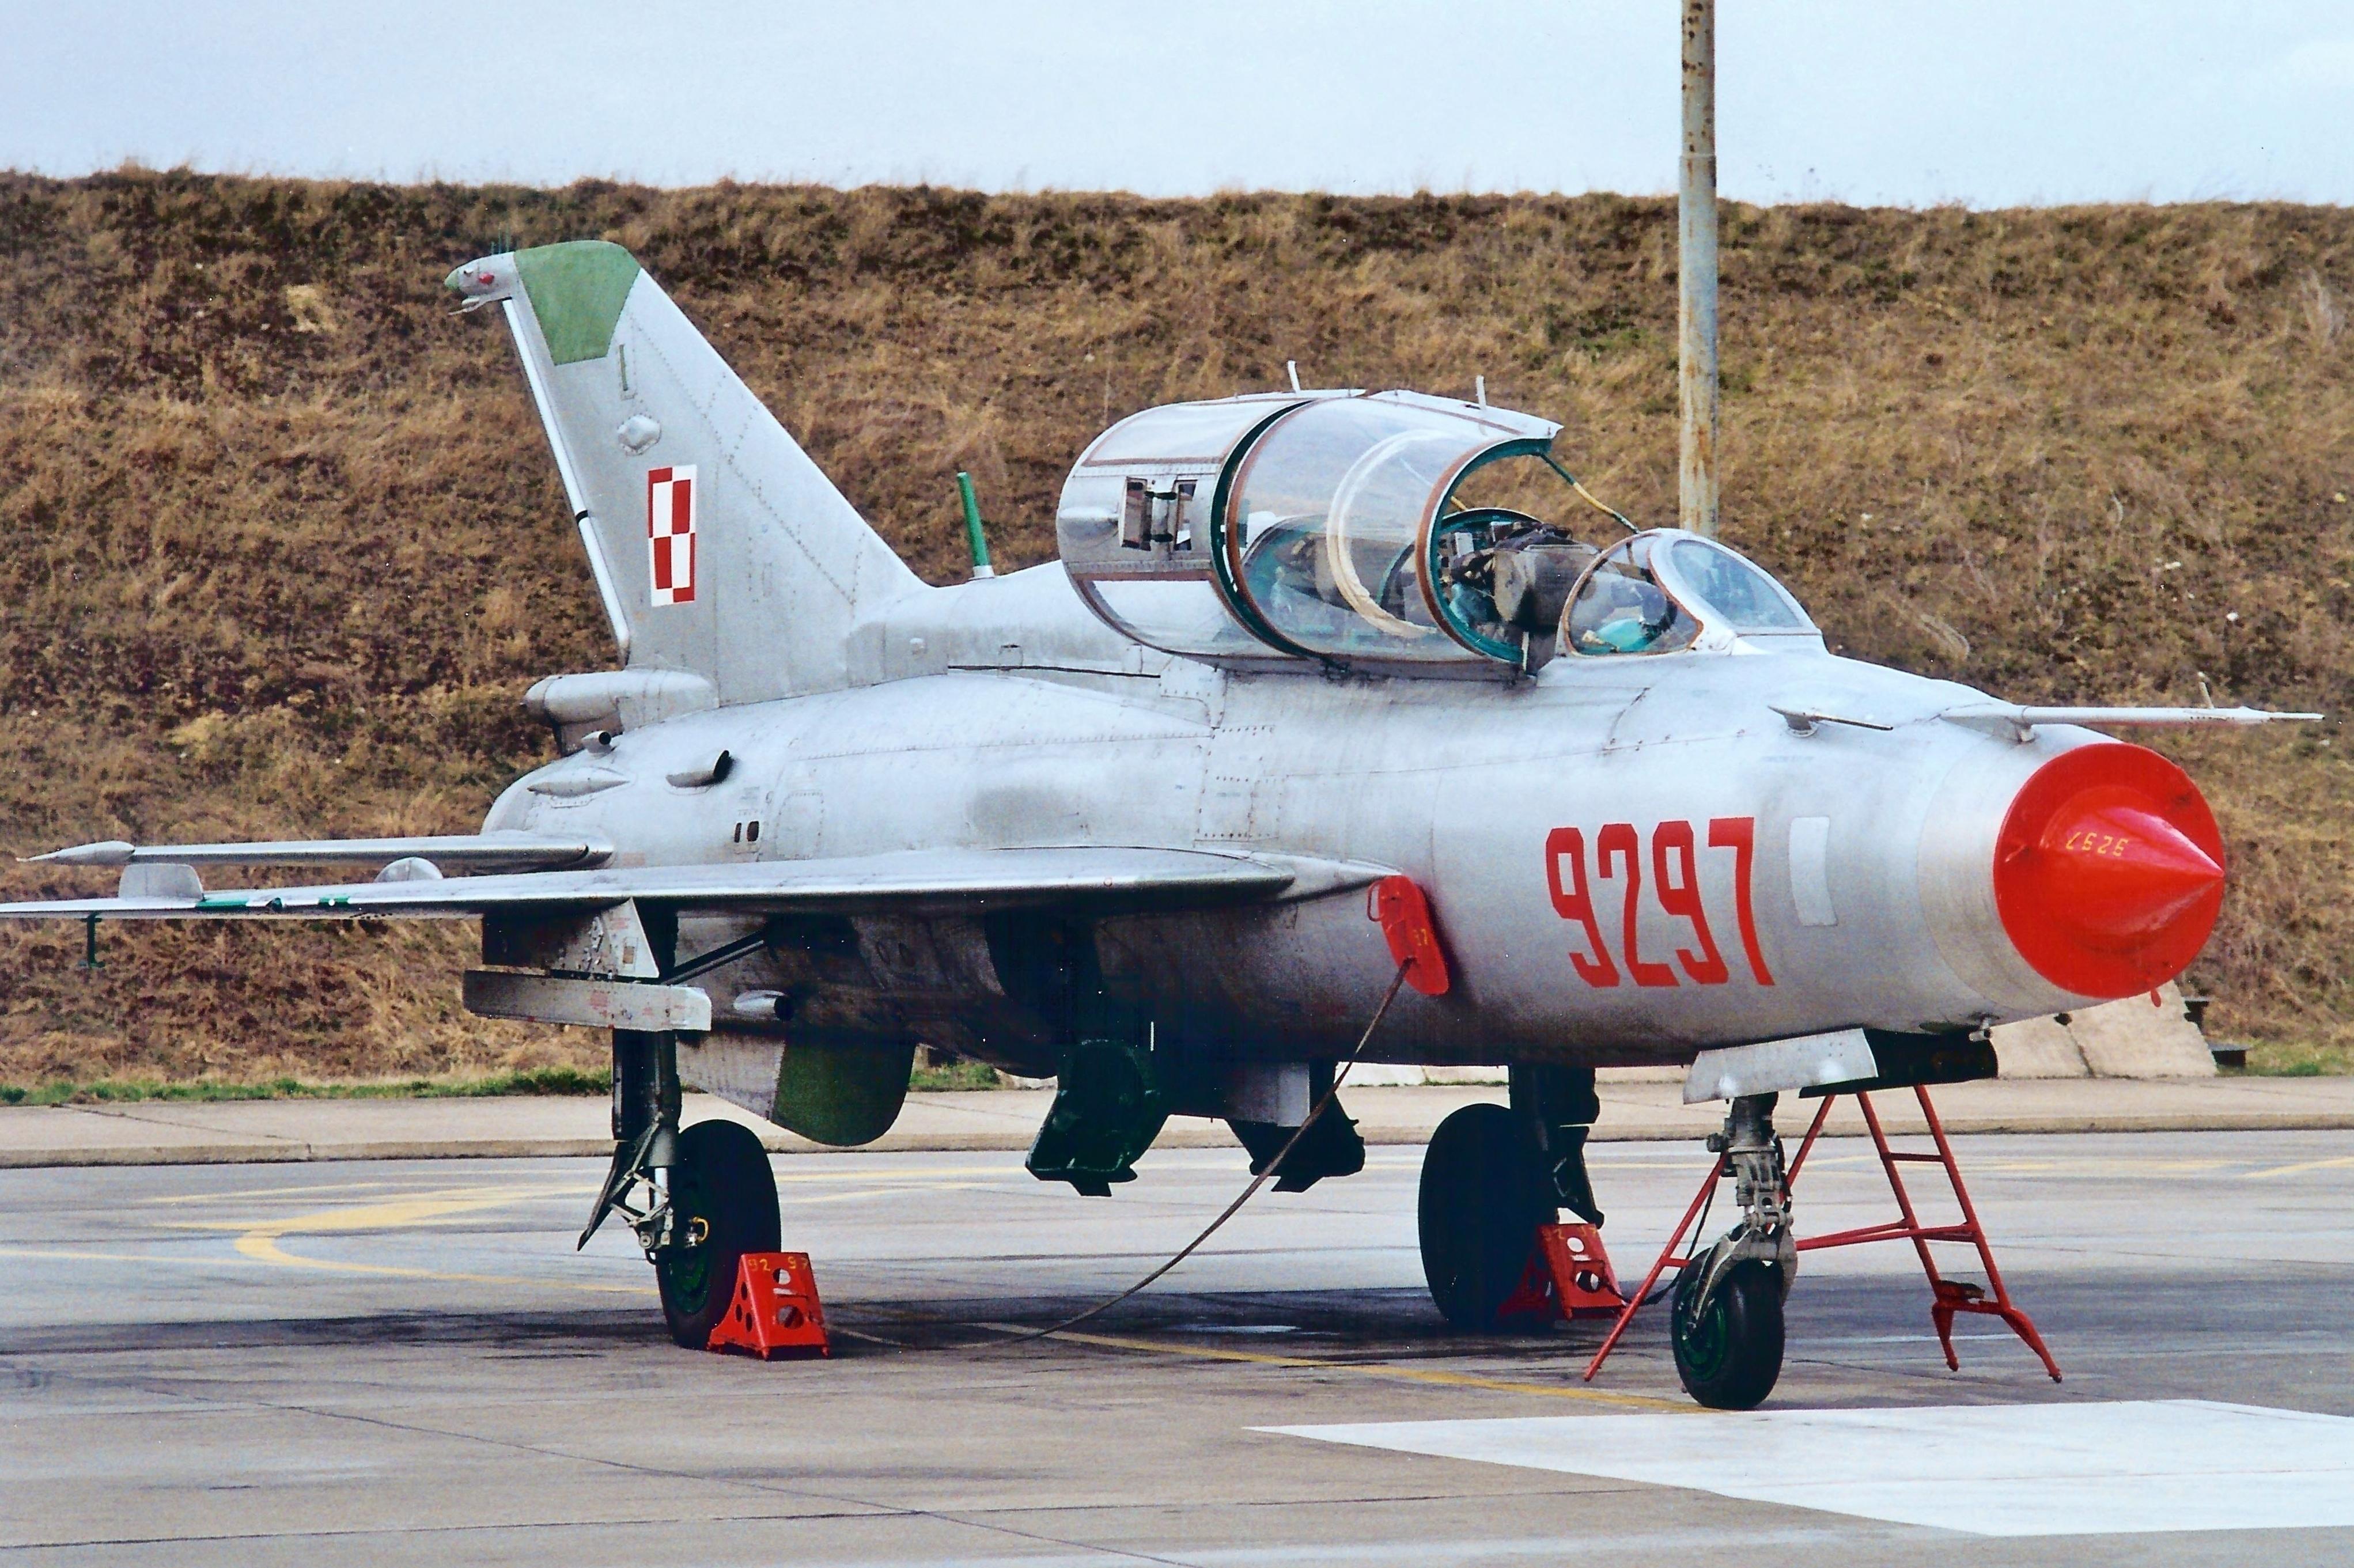 MiG-21UM 9297 